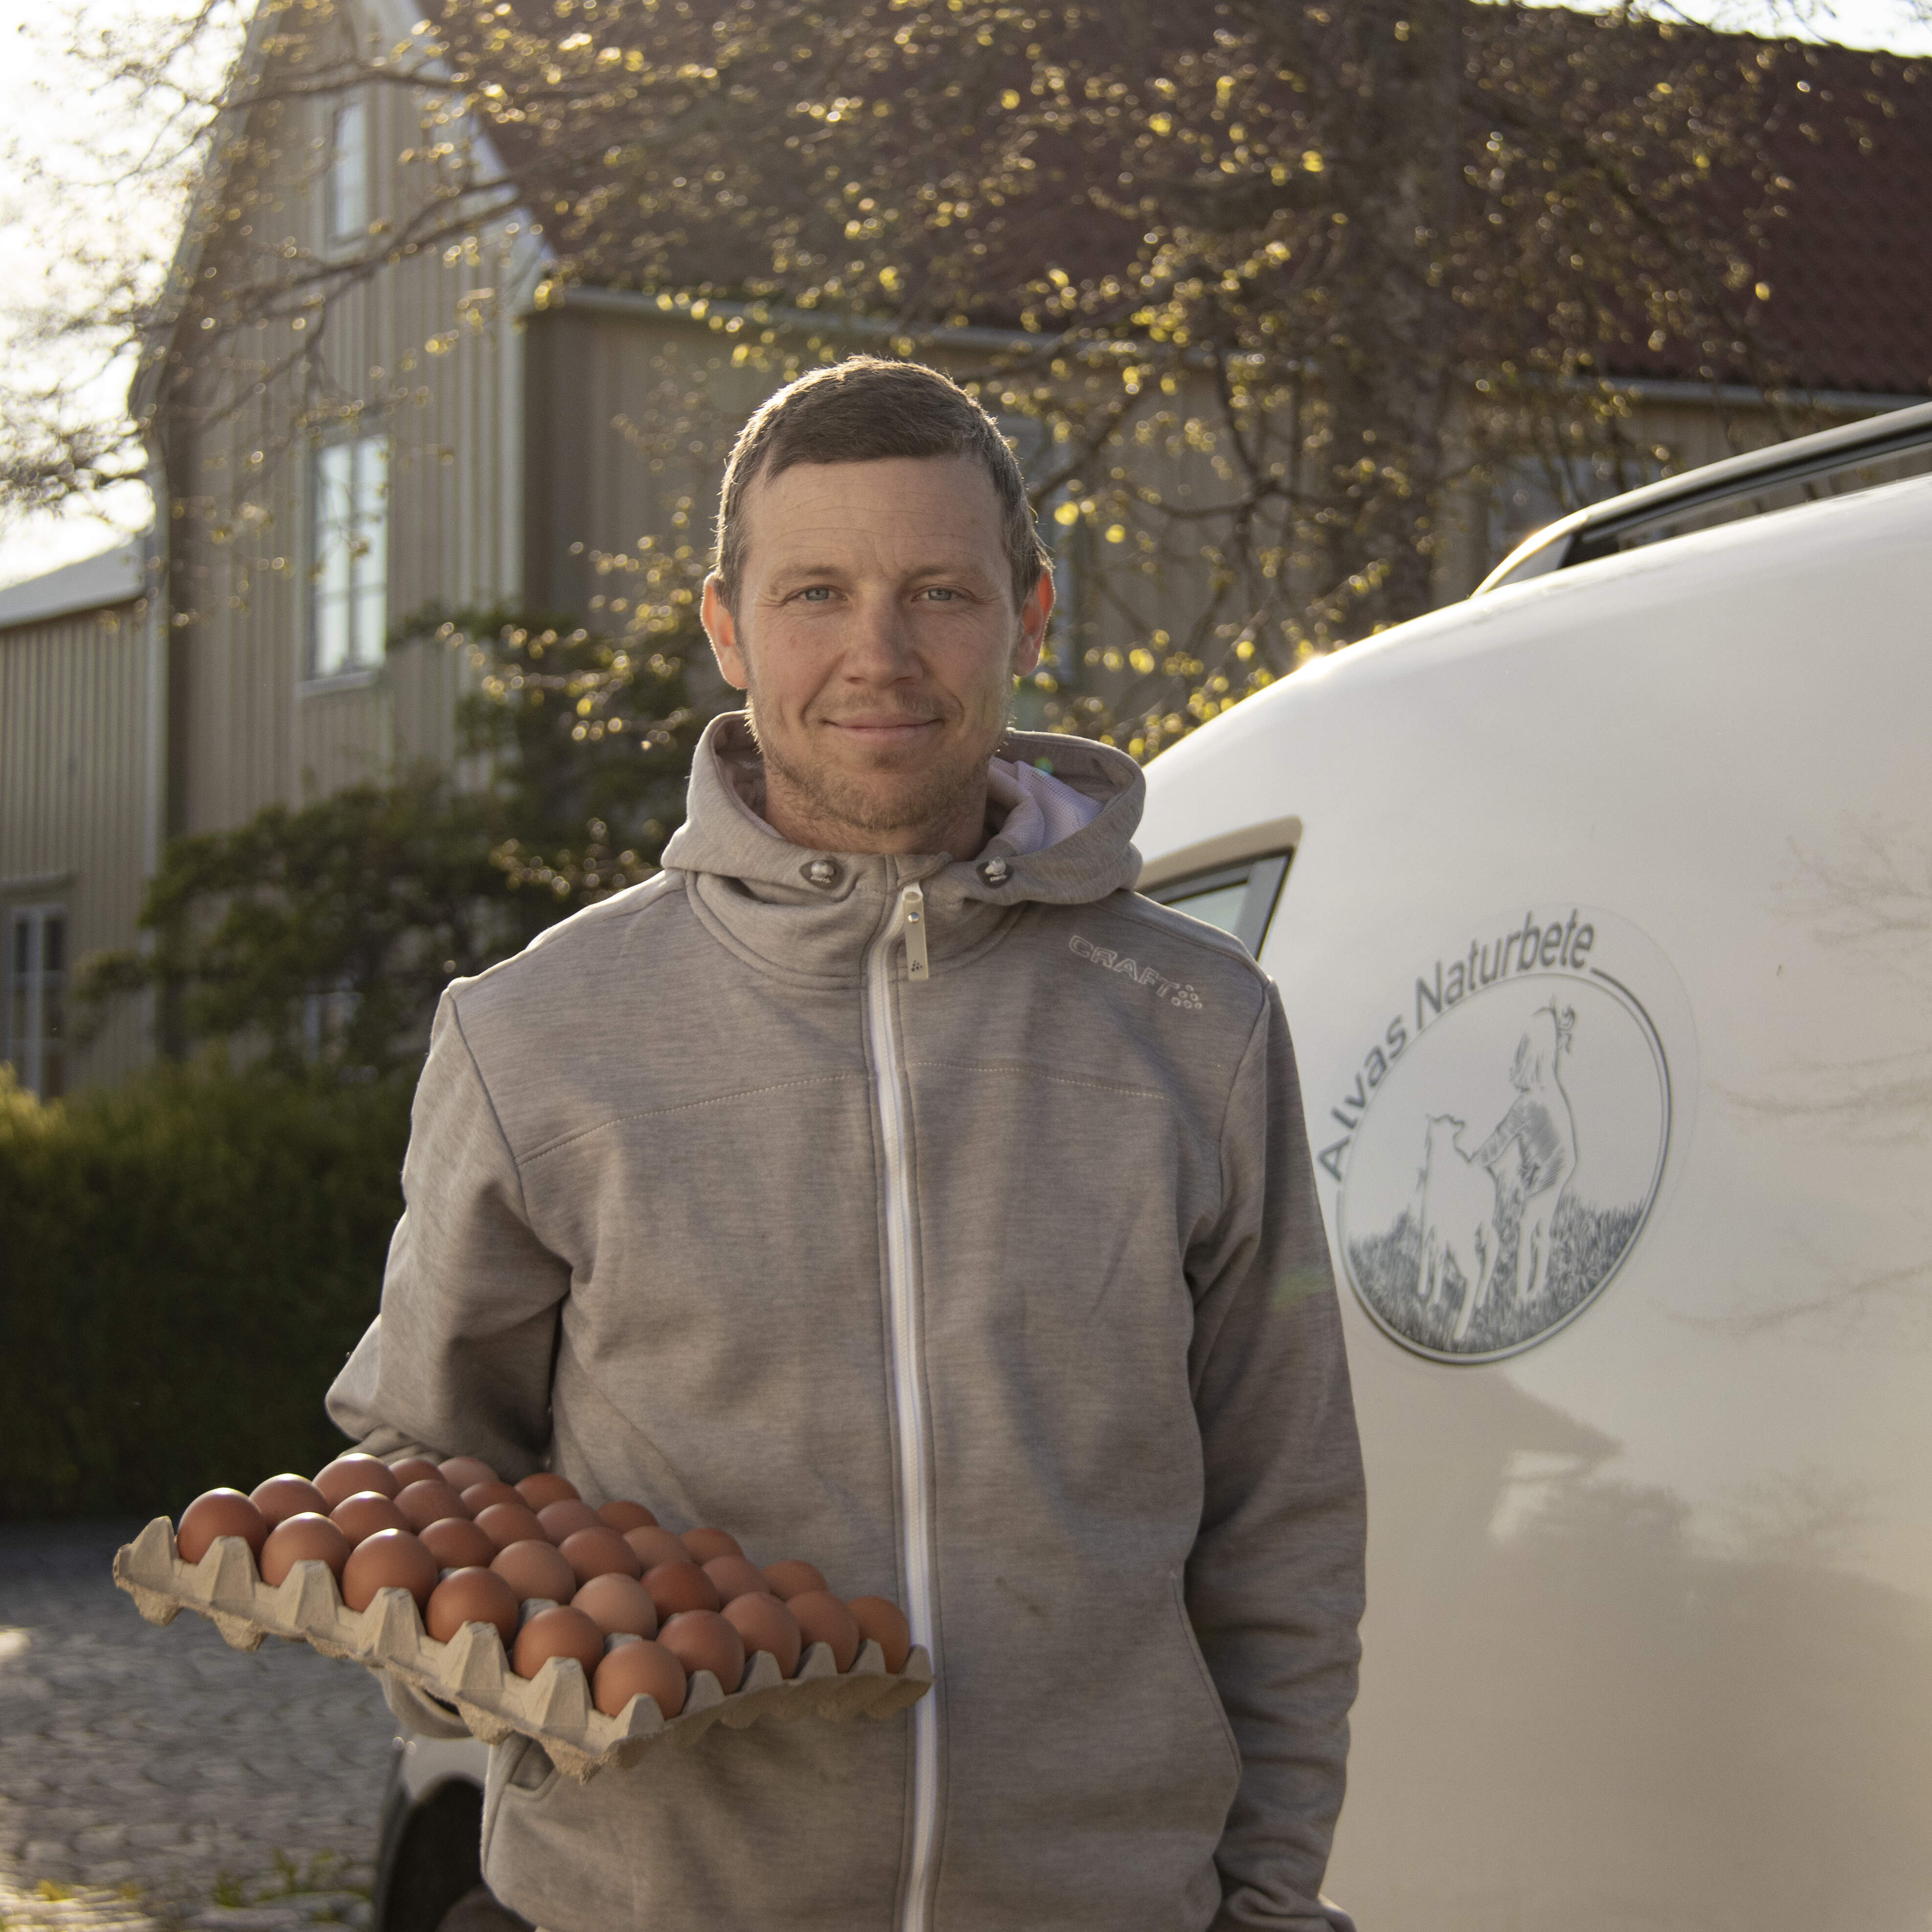 Daniel Hägerby, Alvas Naturbete, hade bilen full av gårdsägg och lämnade även ut kött och yoghurt.